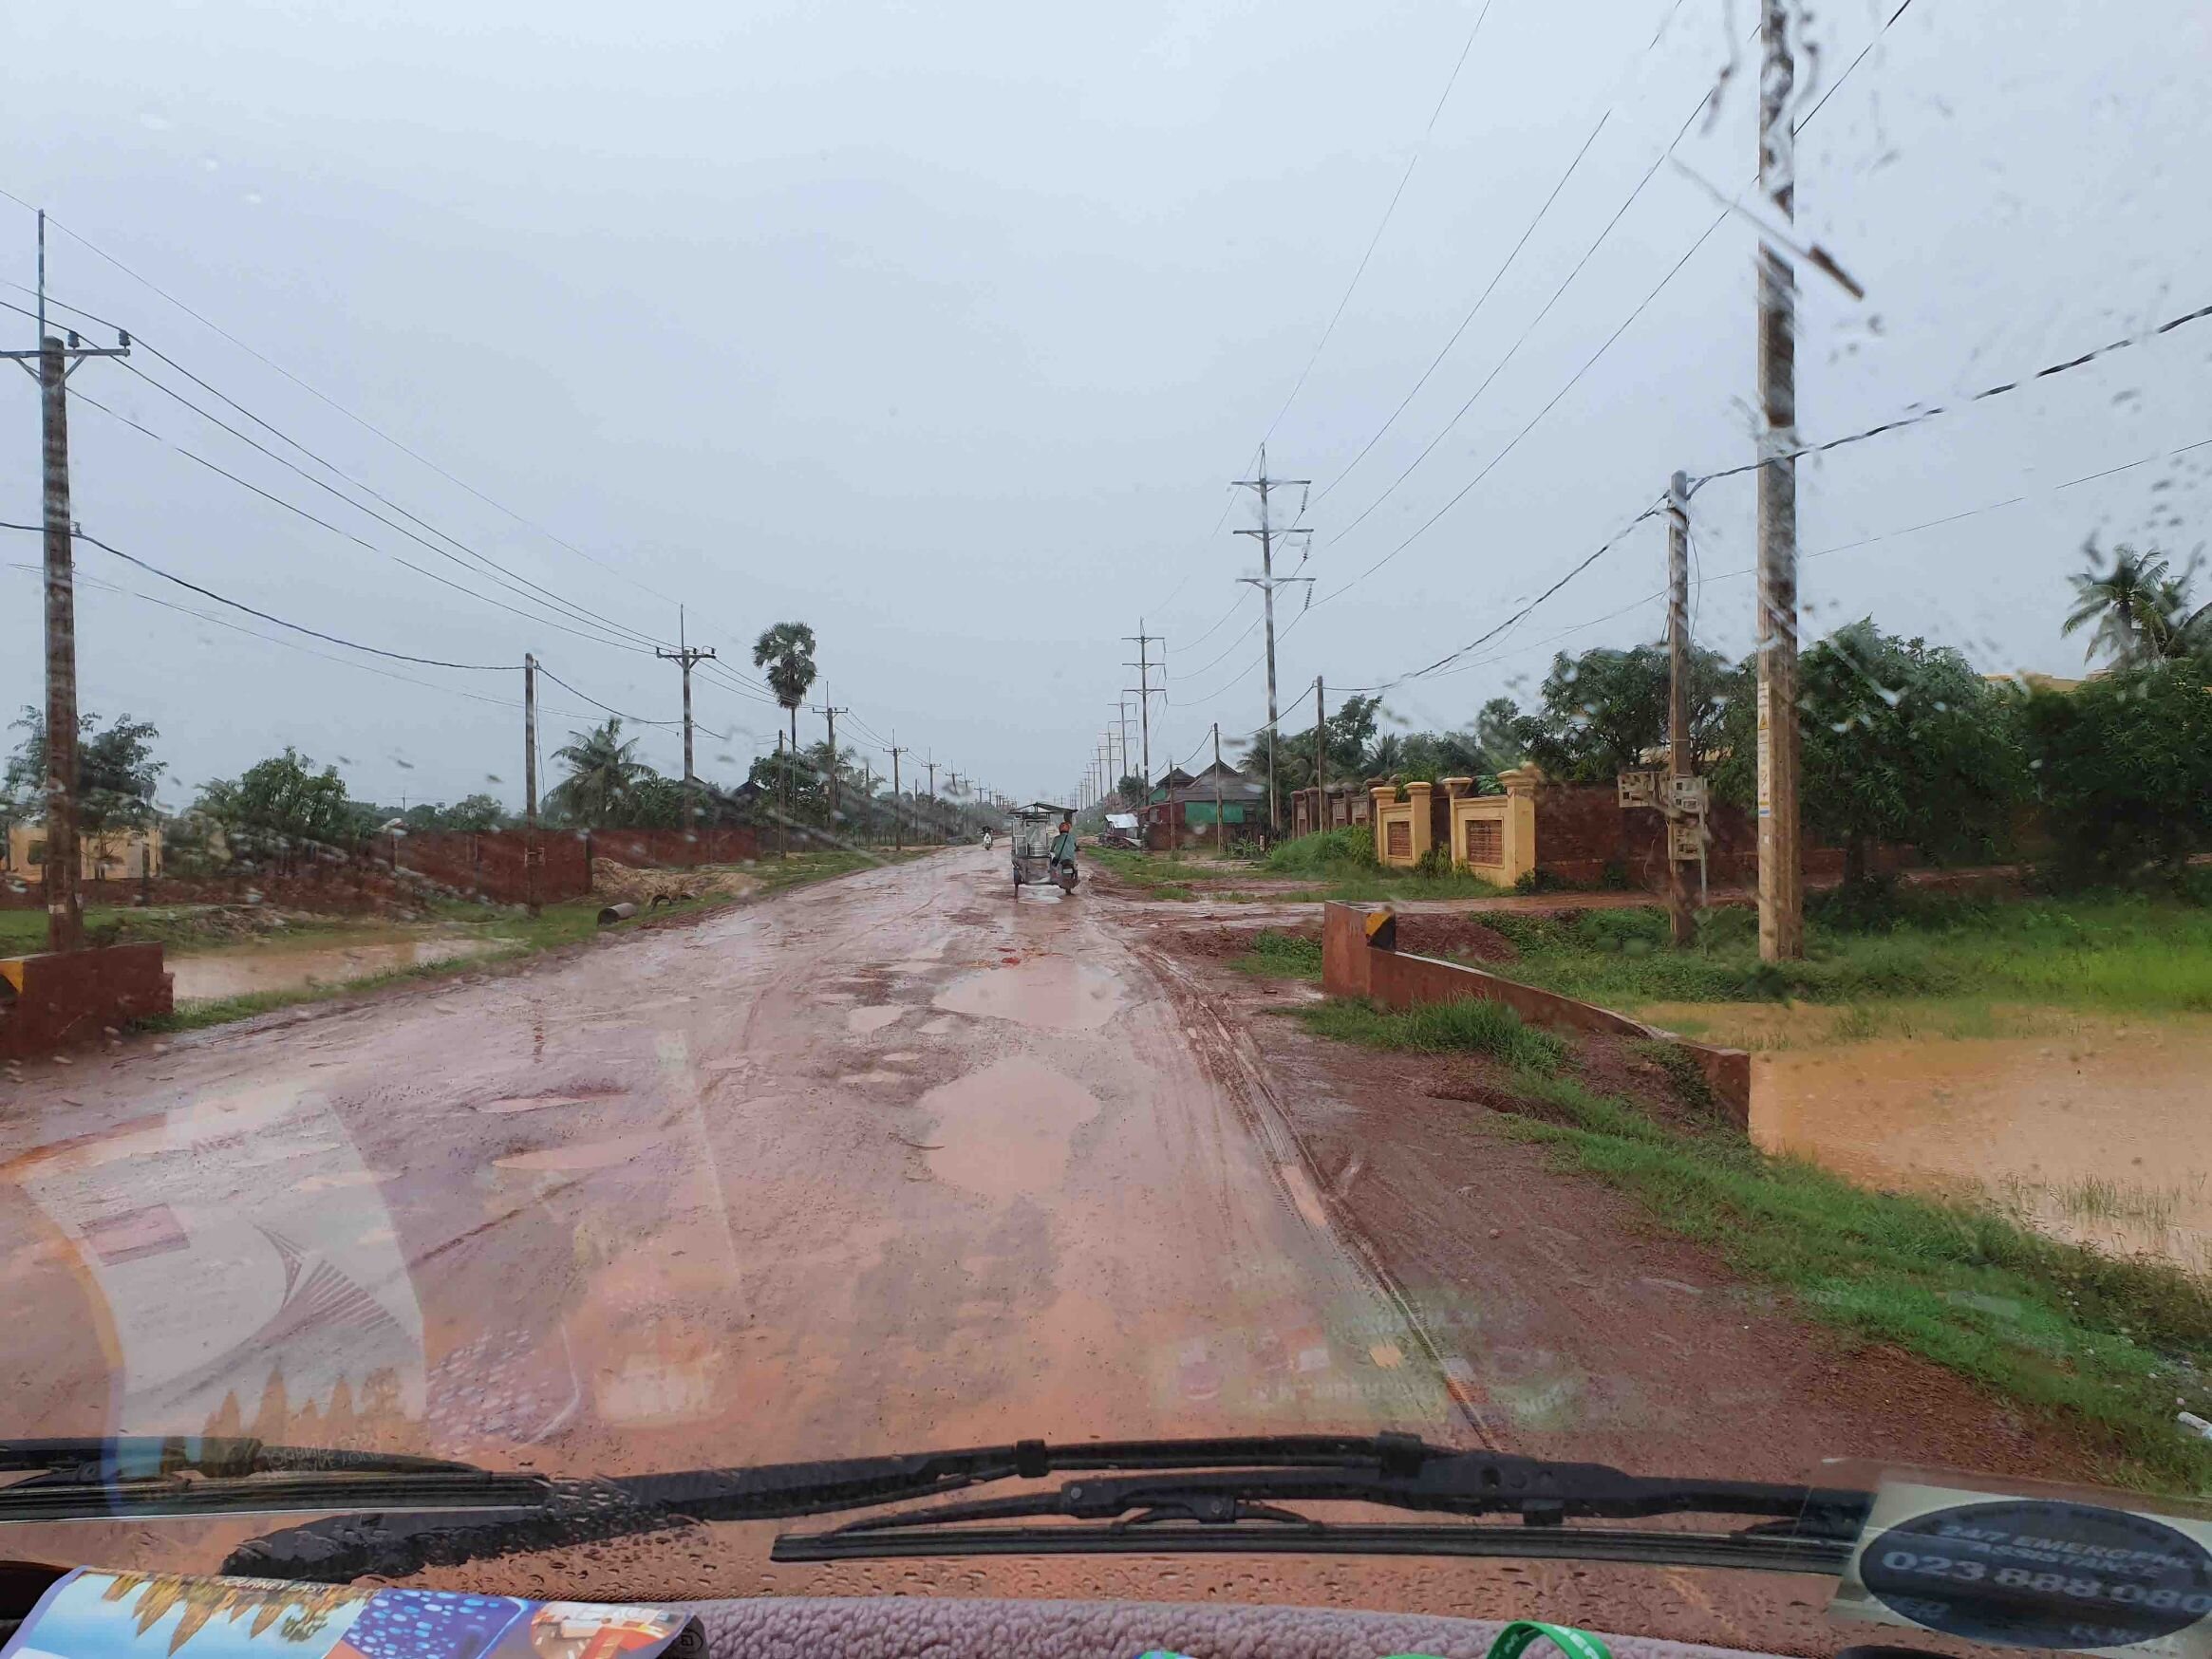 muddy-roads-cambodia-mount-waverley-rotary.jpg